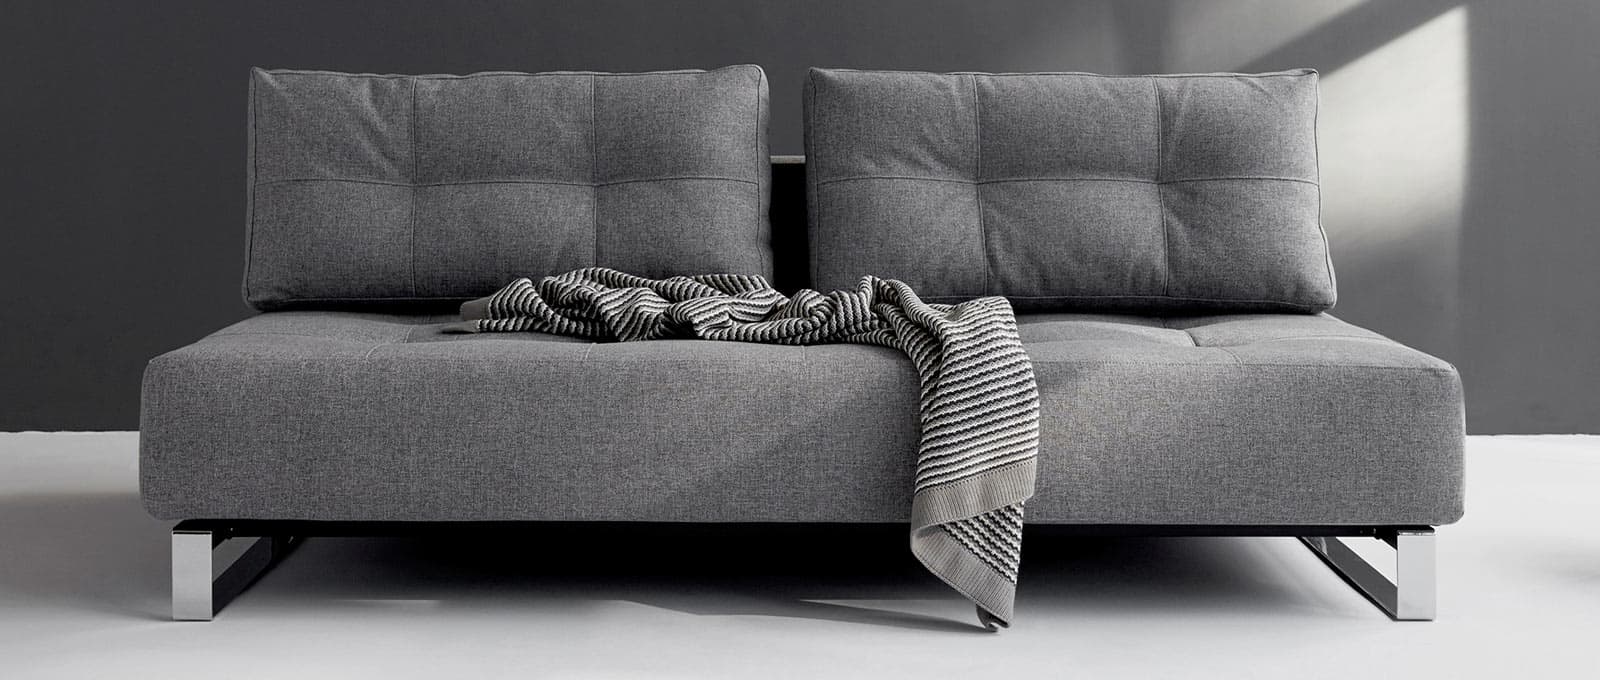 Innovation SUPREMAX DELUXE EXCESS Schlafsofa mit weicher Polsterung, Lounge Sofa ohne Armlehnen - 155x200